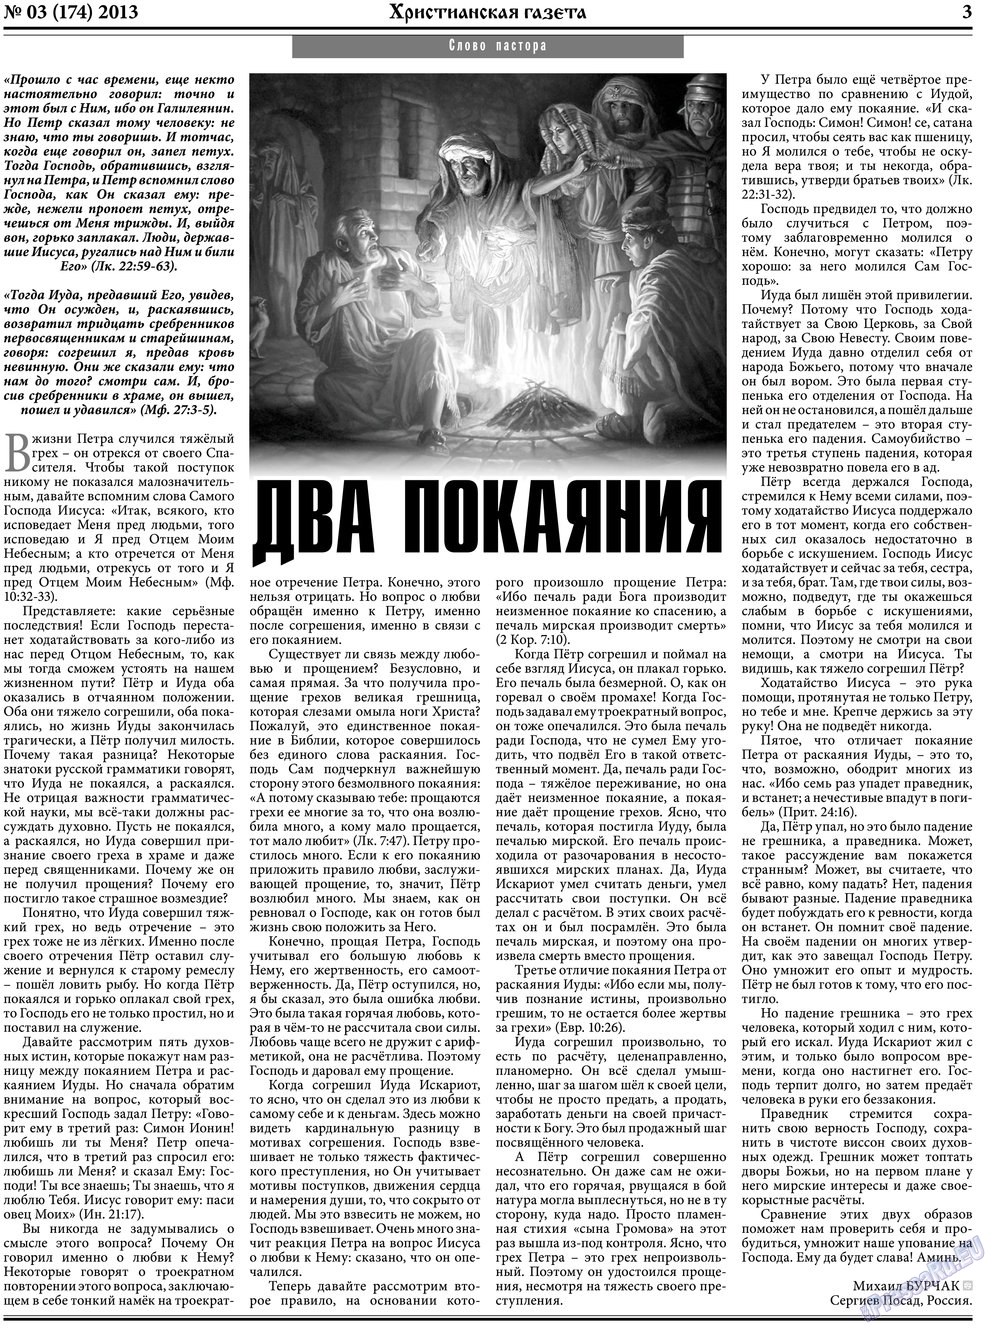 Христианская газета, газета. 2013 №3 стр.3